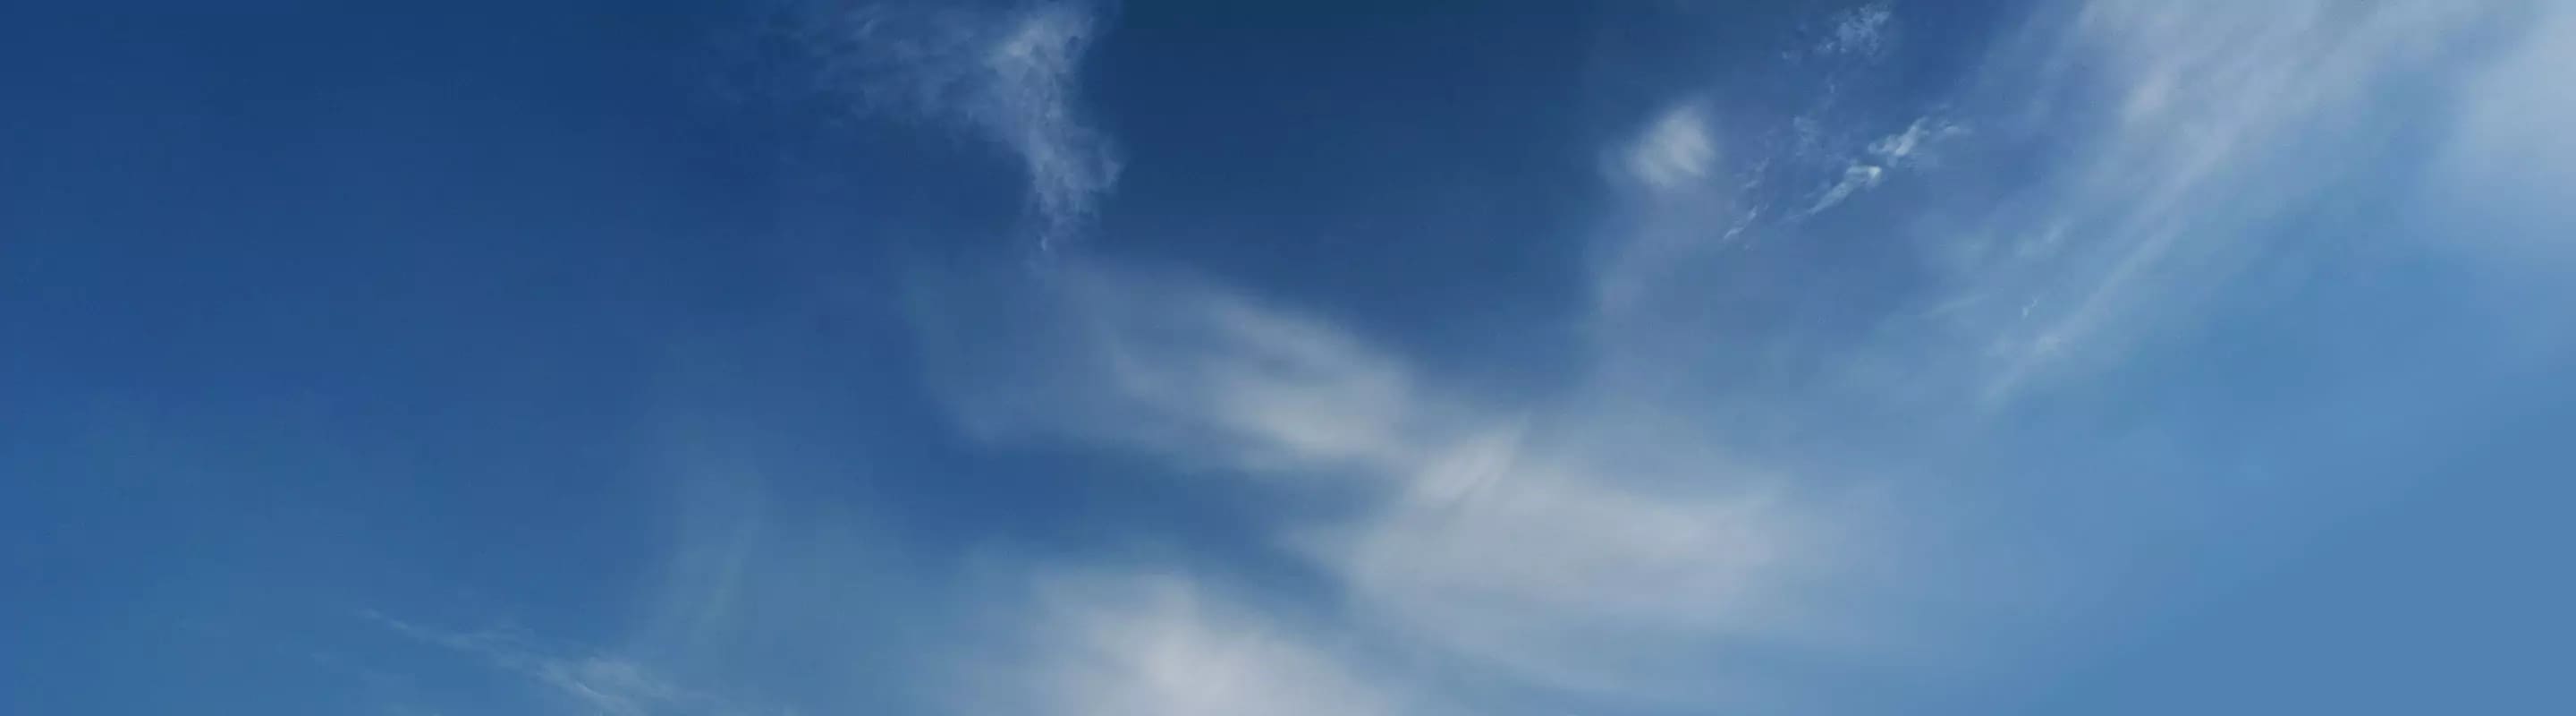 cielo azul con nubes tenues